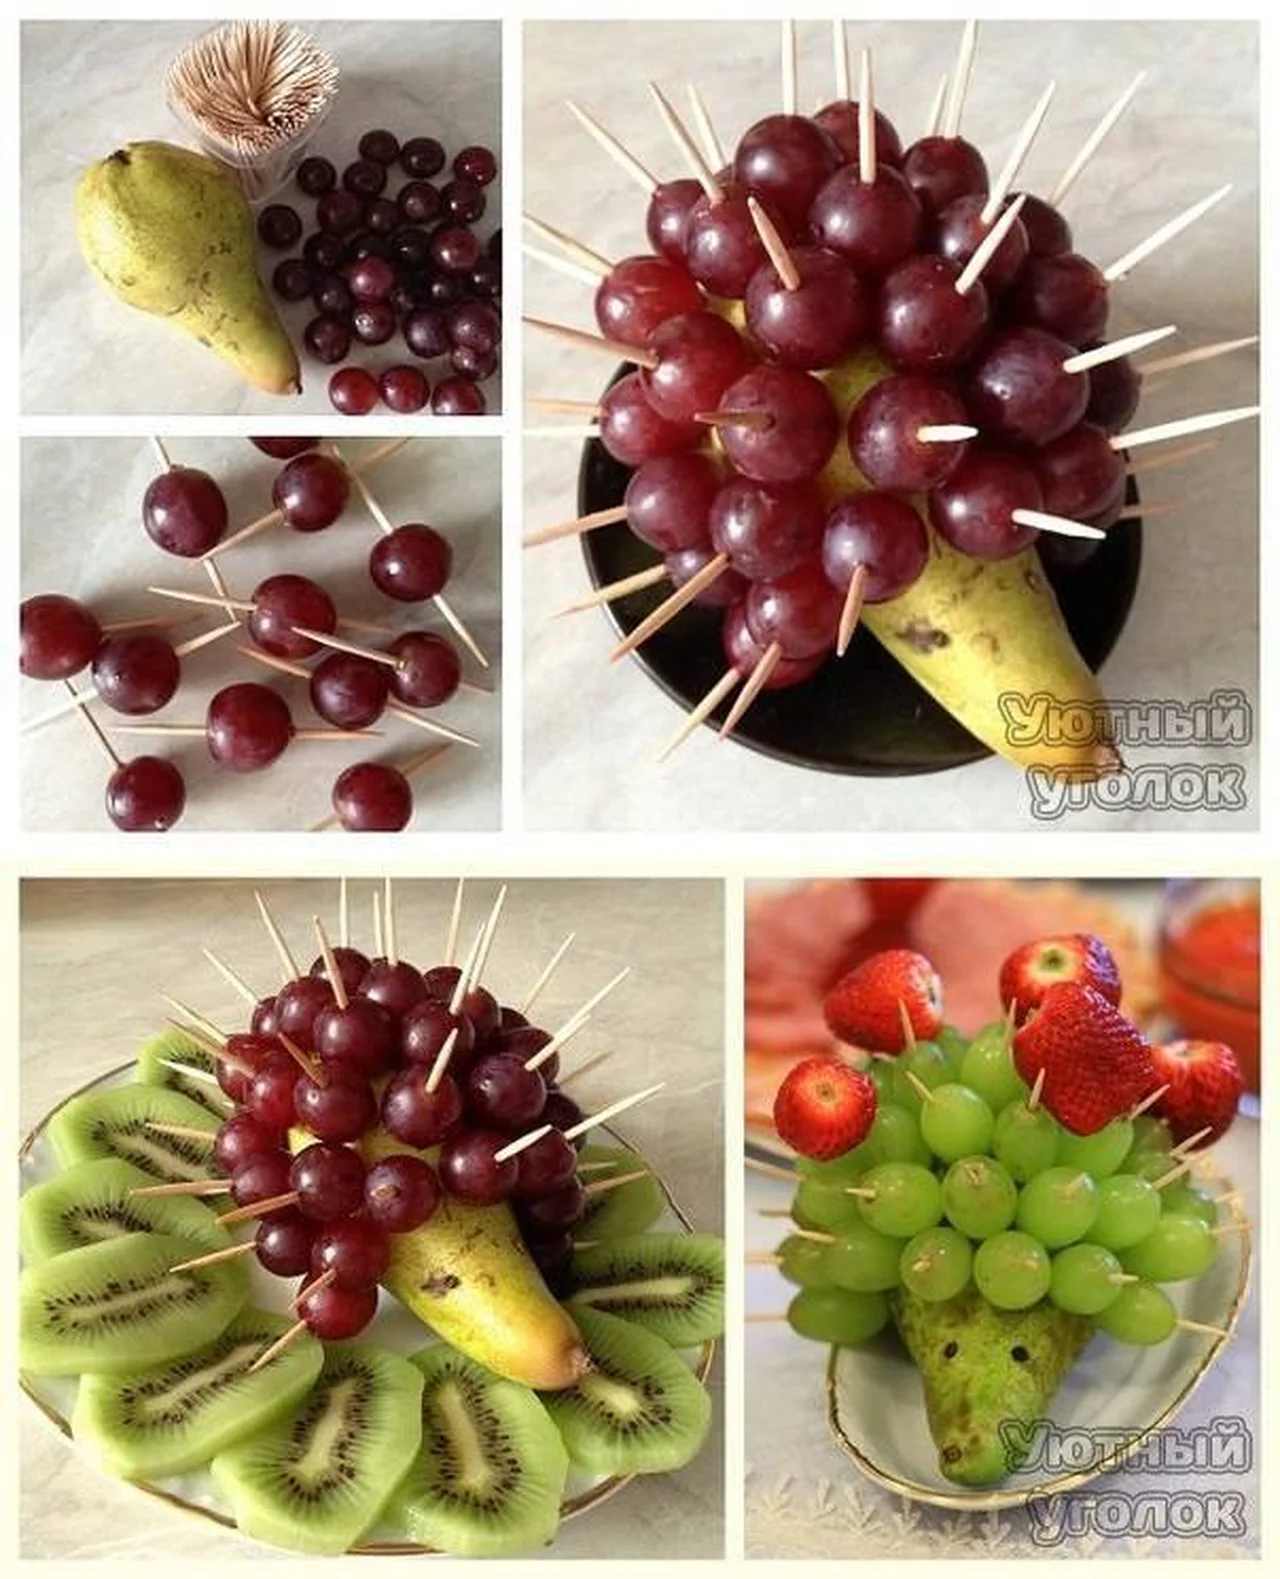 Owocowy jeż :)